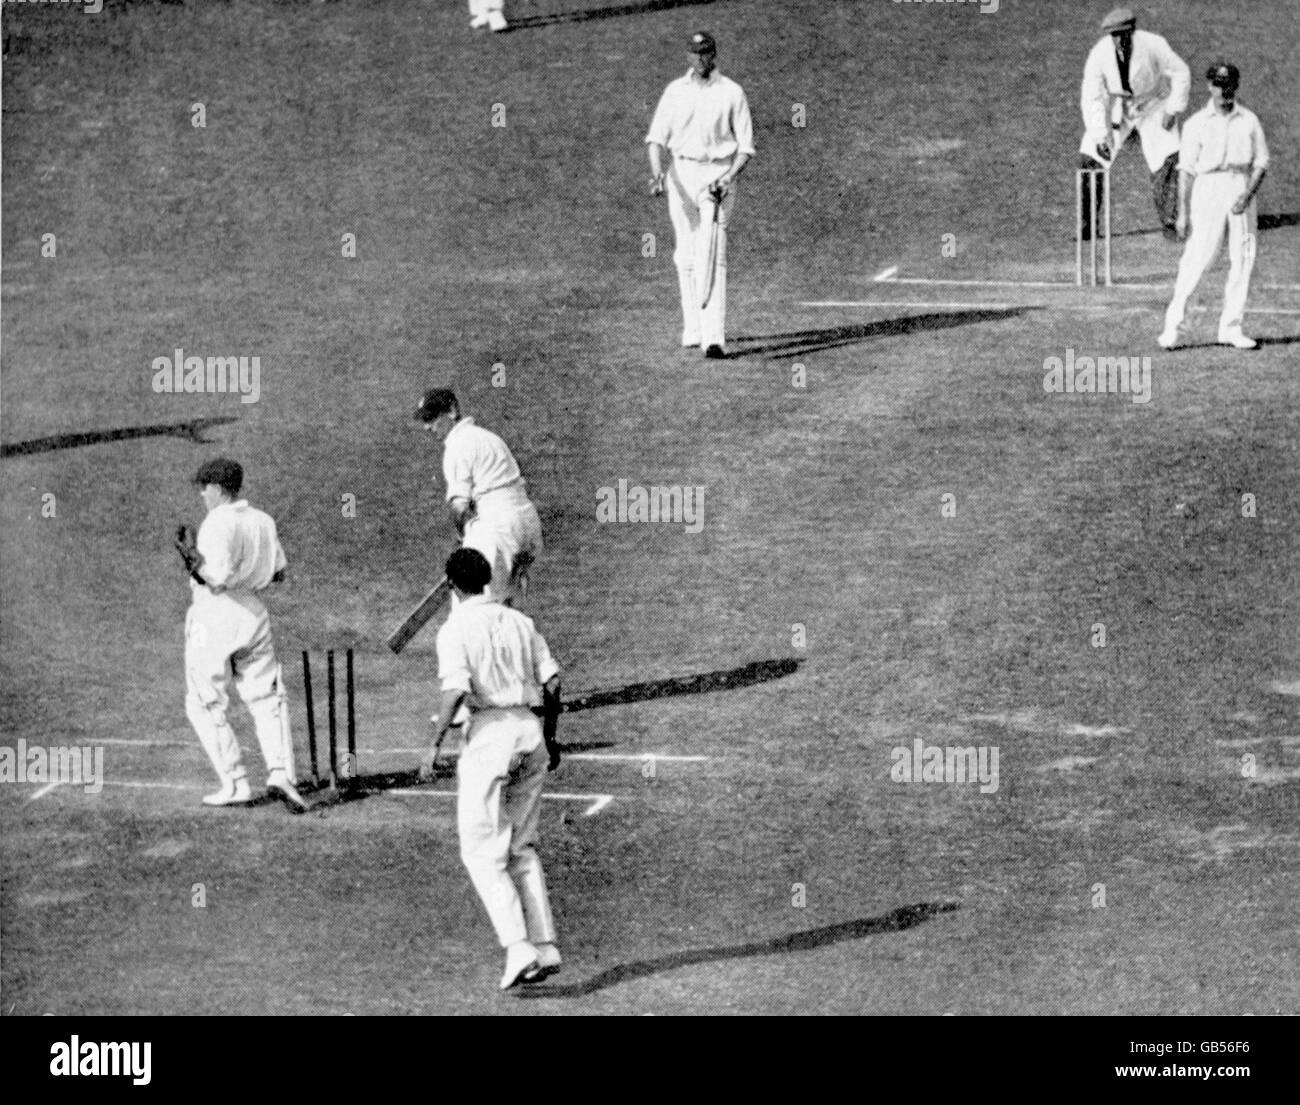 Cricket - The Ashes - zweiter Test - England gegen Australien - Dritter Tag. Der englische Jack Hobbs (zweite l) dreht sich um und stellt fest, dass er von Clarrie Grimmett, Australiens Australier, sauber gebumst wurde (r) Stockfoto